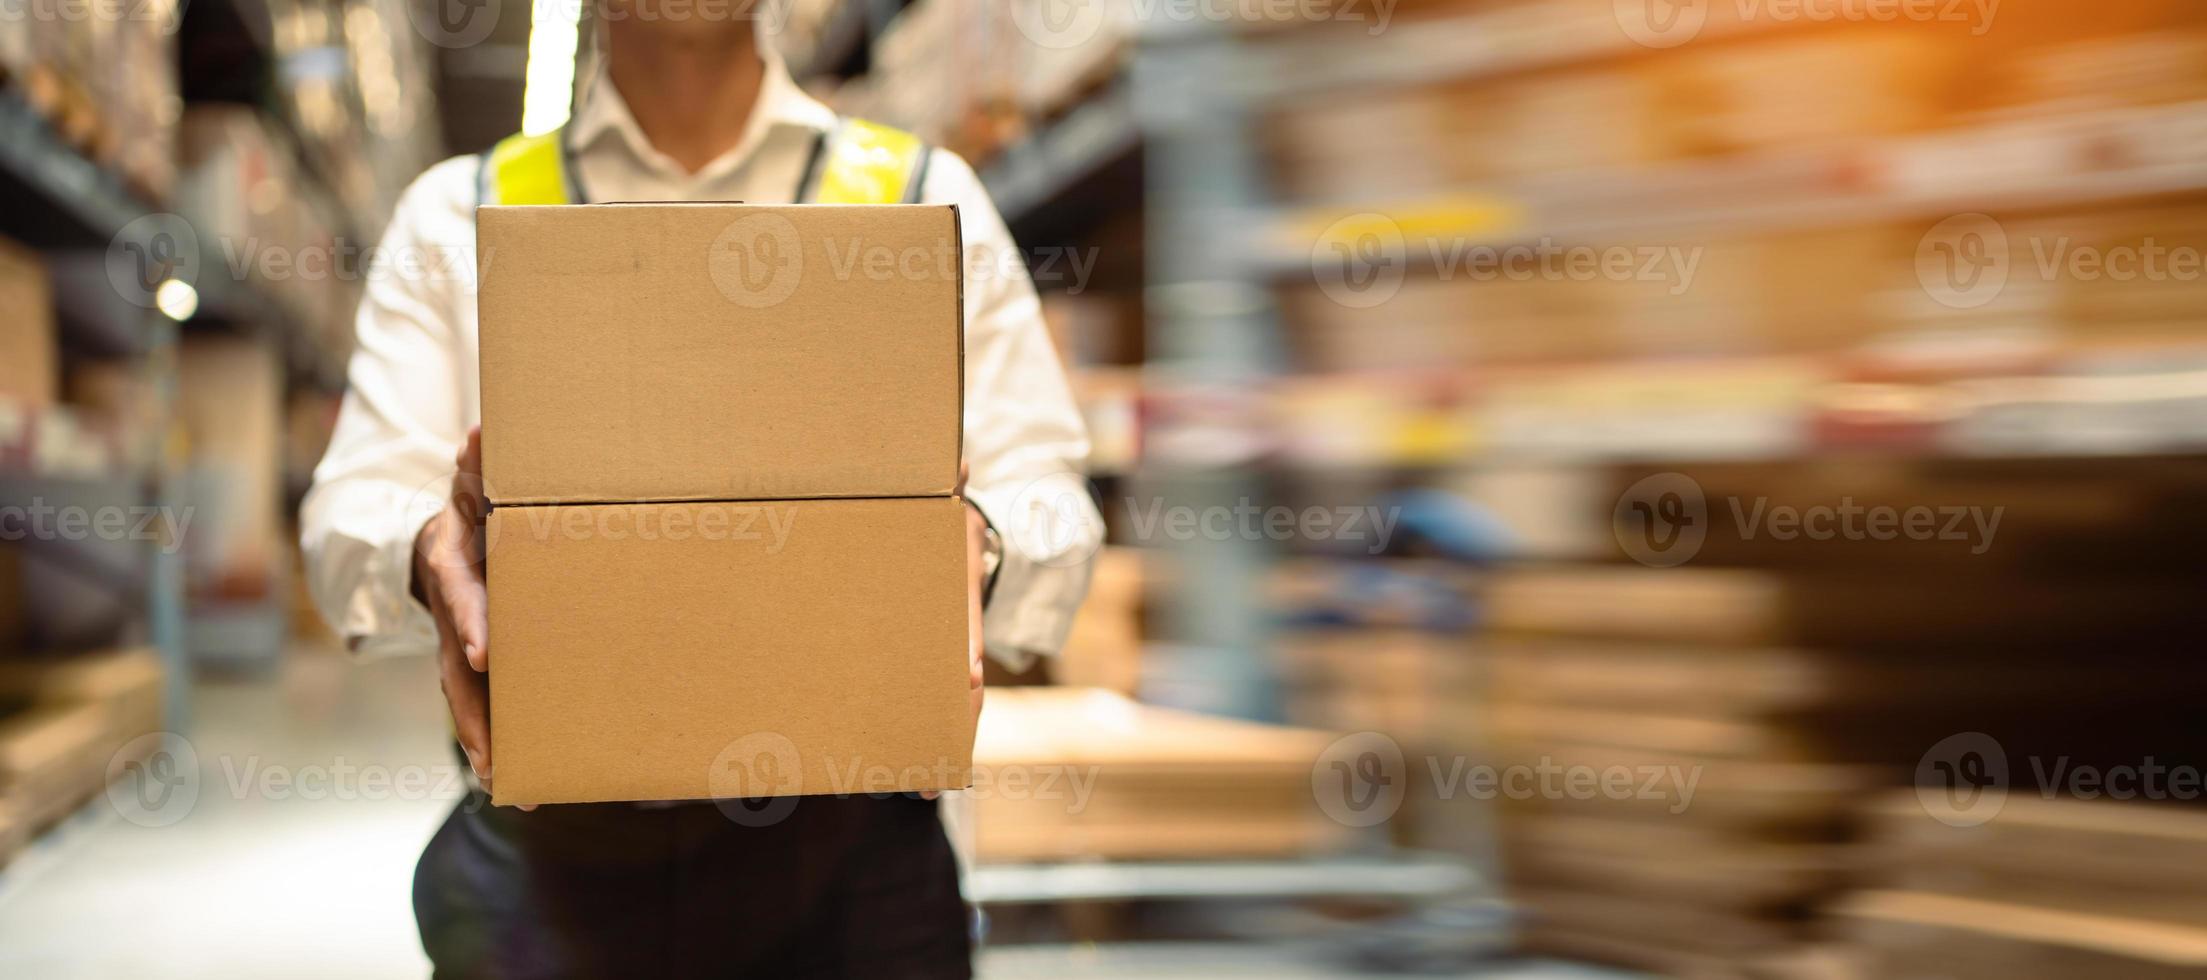 gros plan, ouvriers transportant des cartons dans un grand entrepôt logistique. concept de système logistique export-import. boîte à colis à l'entrepôt, emballage, livraison, entrepôt, image de bannière photo